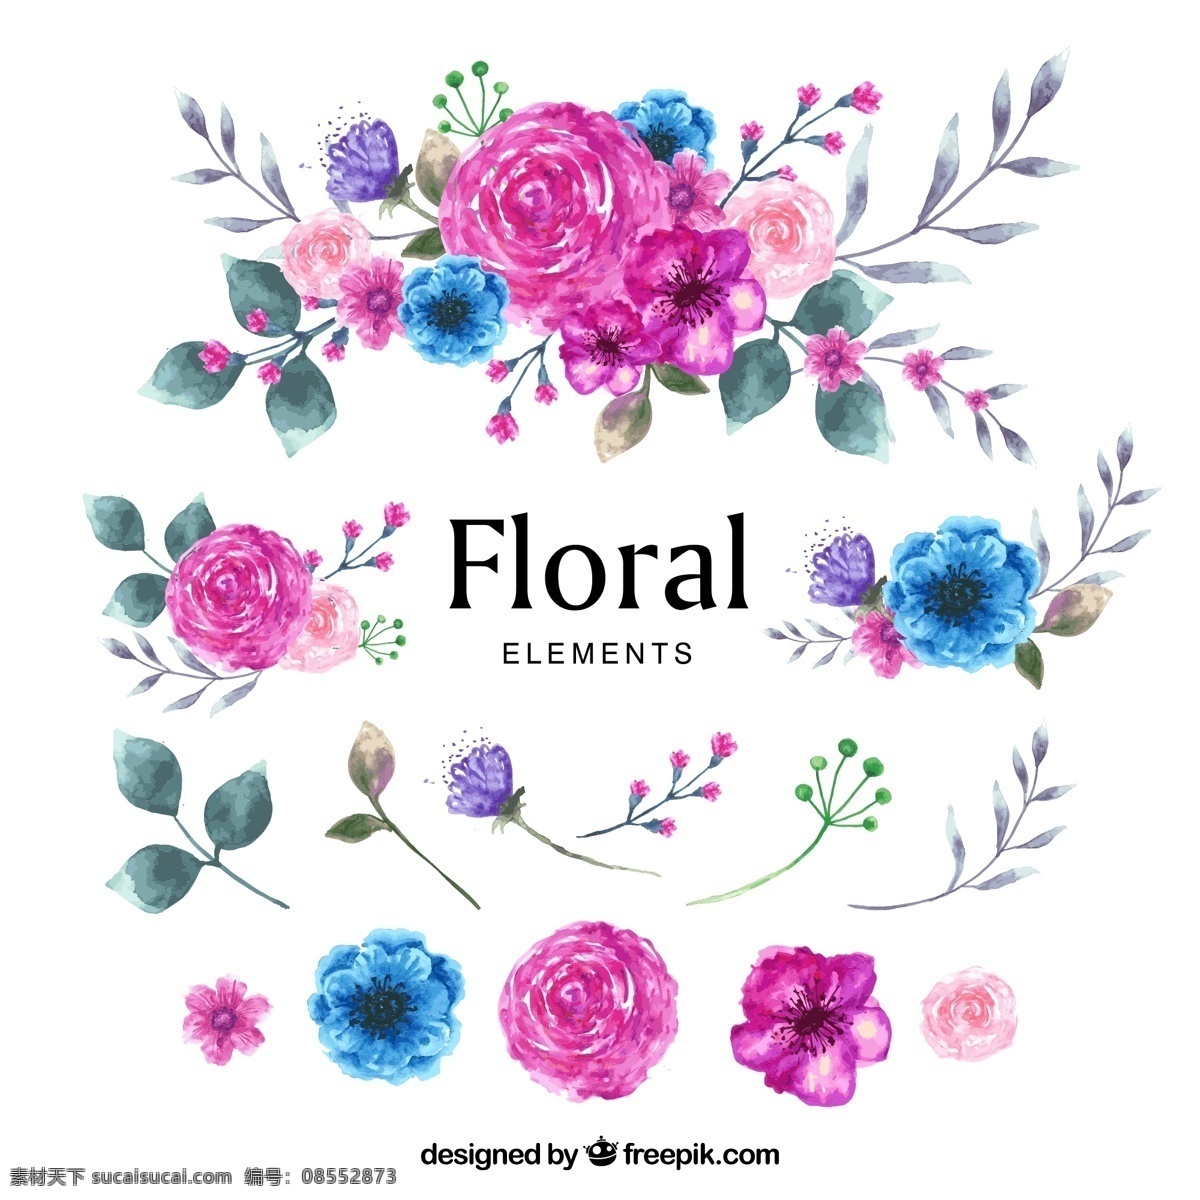 水彩 绘 花卉 花束 叶子 叶子矢量图 玫瑰花 蓝盆花